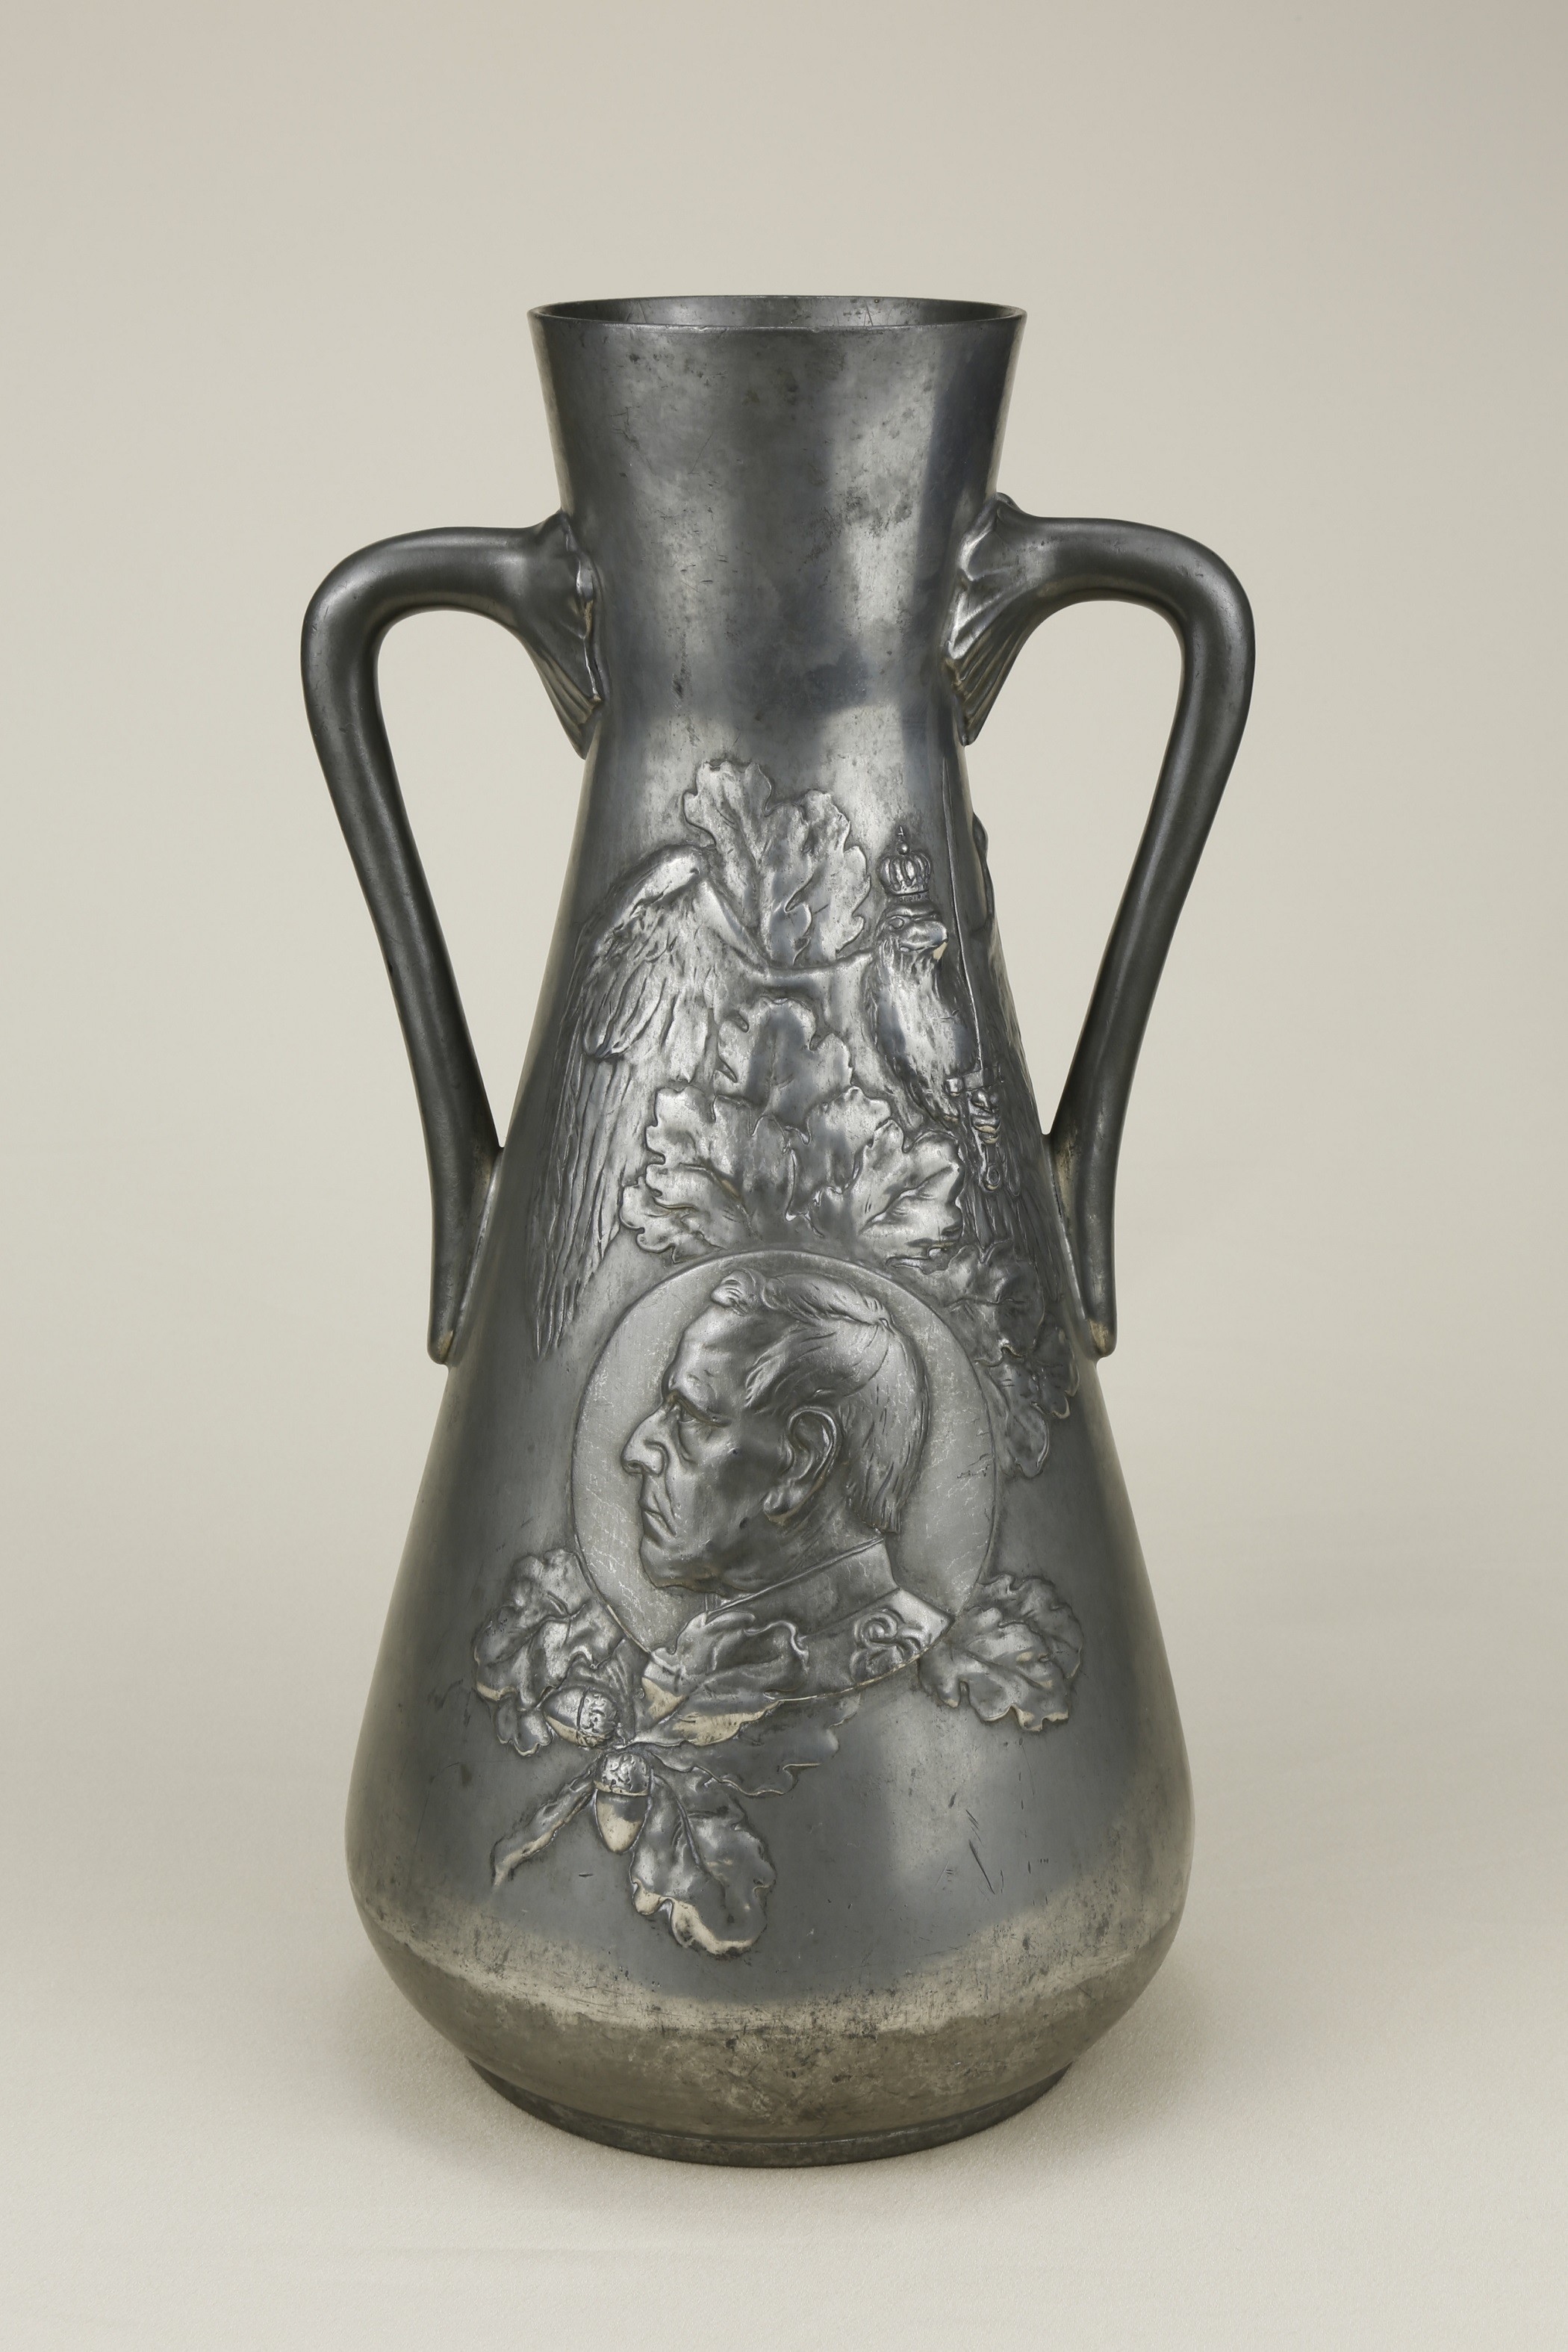 Vase / Moltkevase mit Portrait von Moltke, Eichenzweig und Reichsadler. Kayser 4108 (KreisMuseum Zons CC BY-NC-SA)